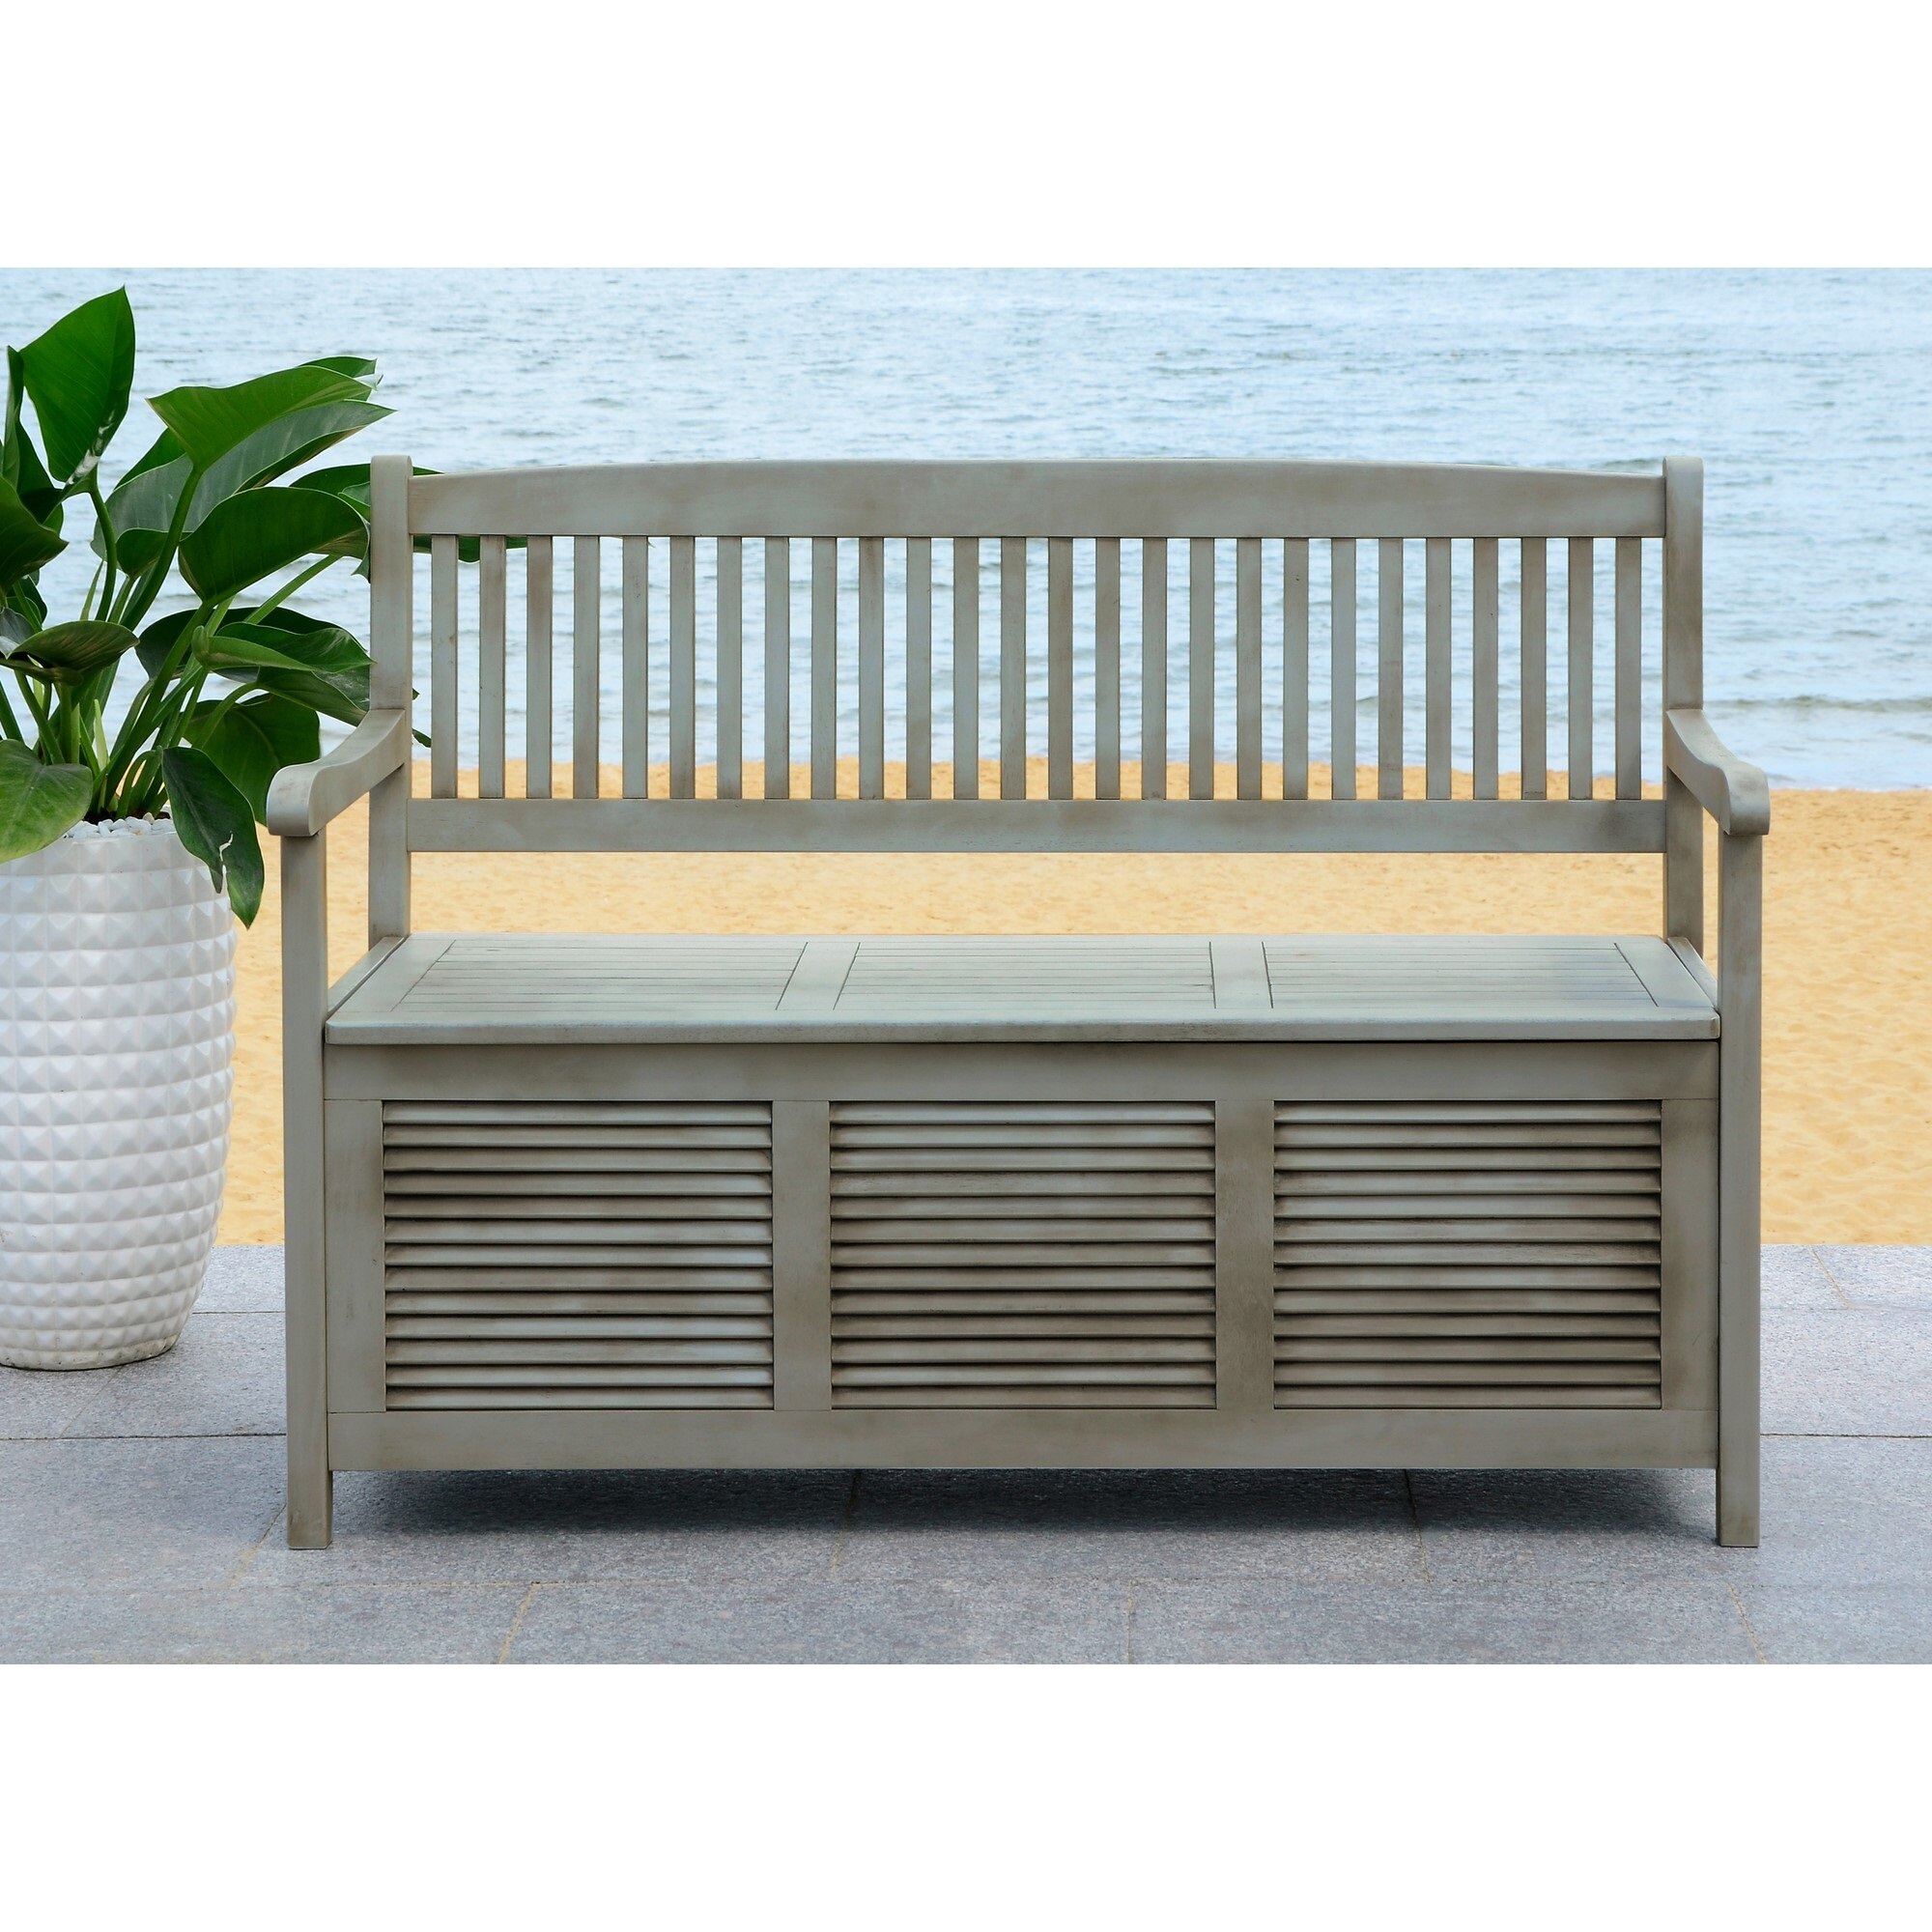 grey outdoor storage bench waterproof